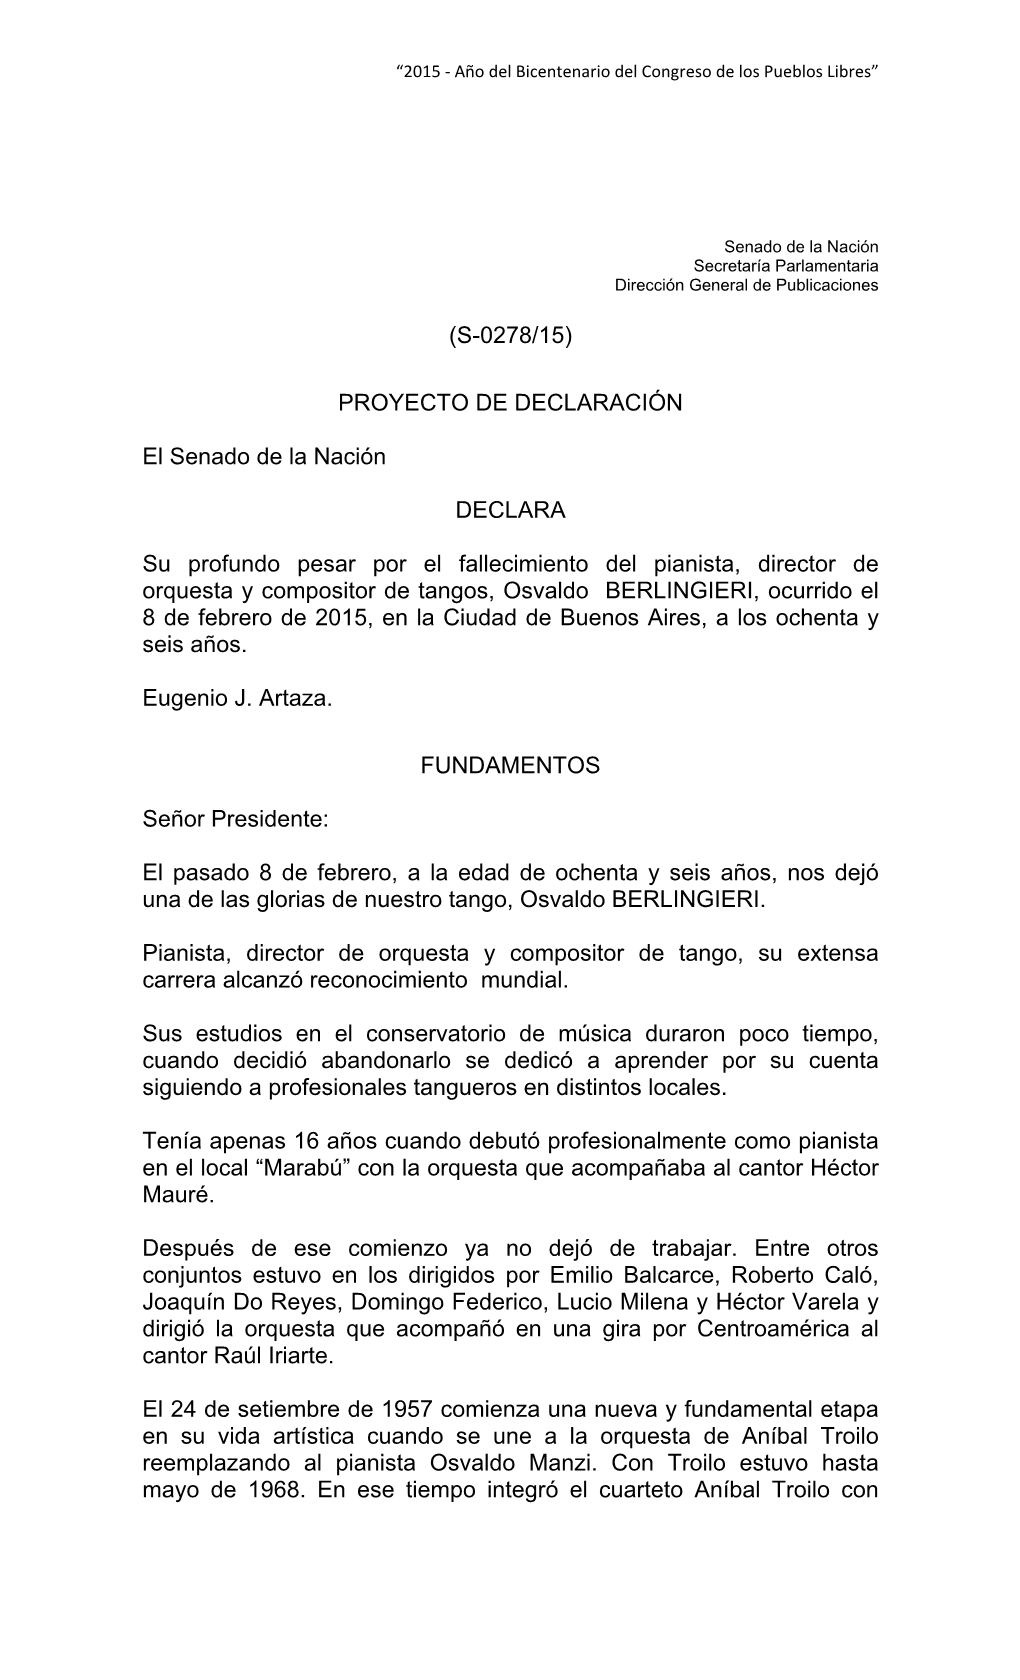 (S-0278/15) PROYECTO DE DECLARACIÓN El Senado De La